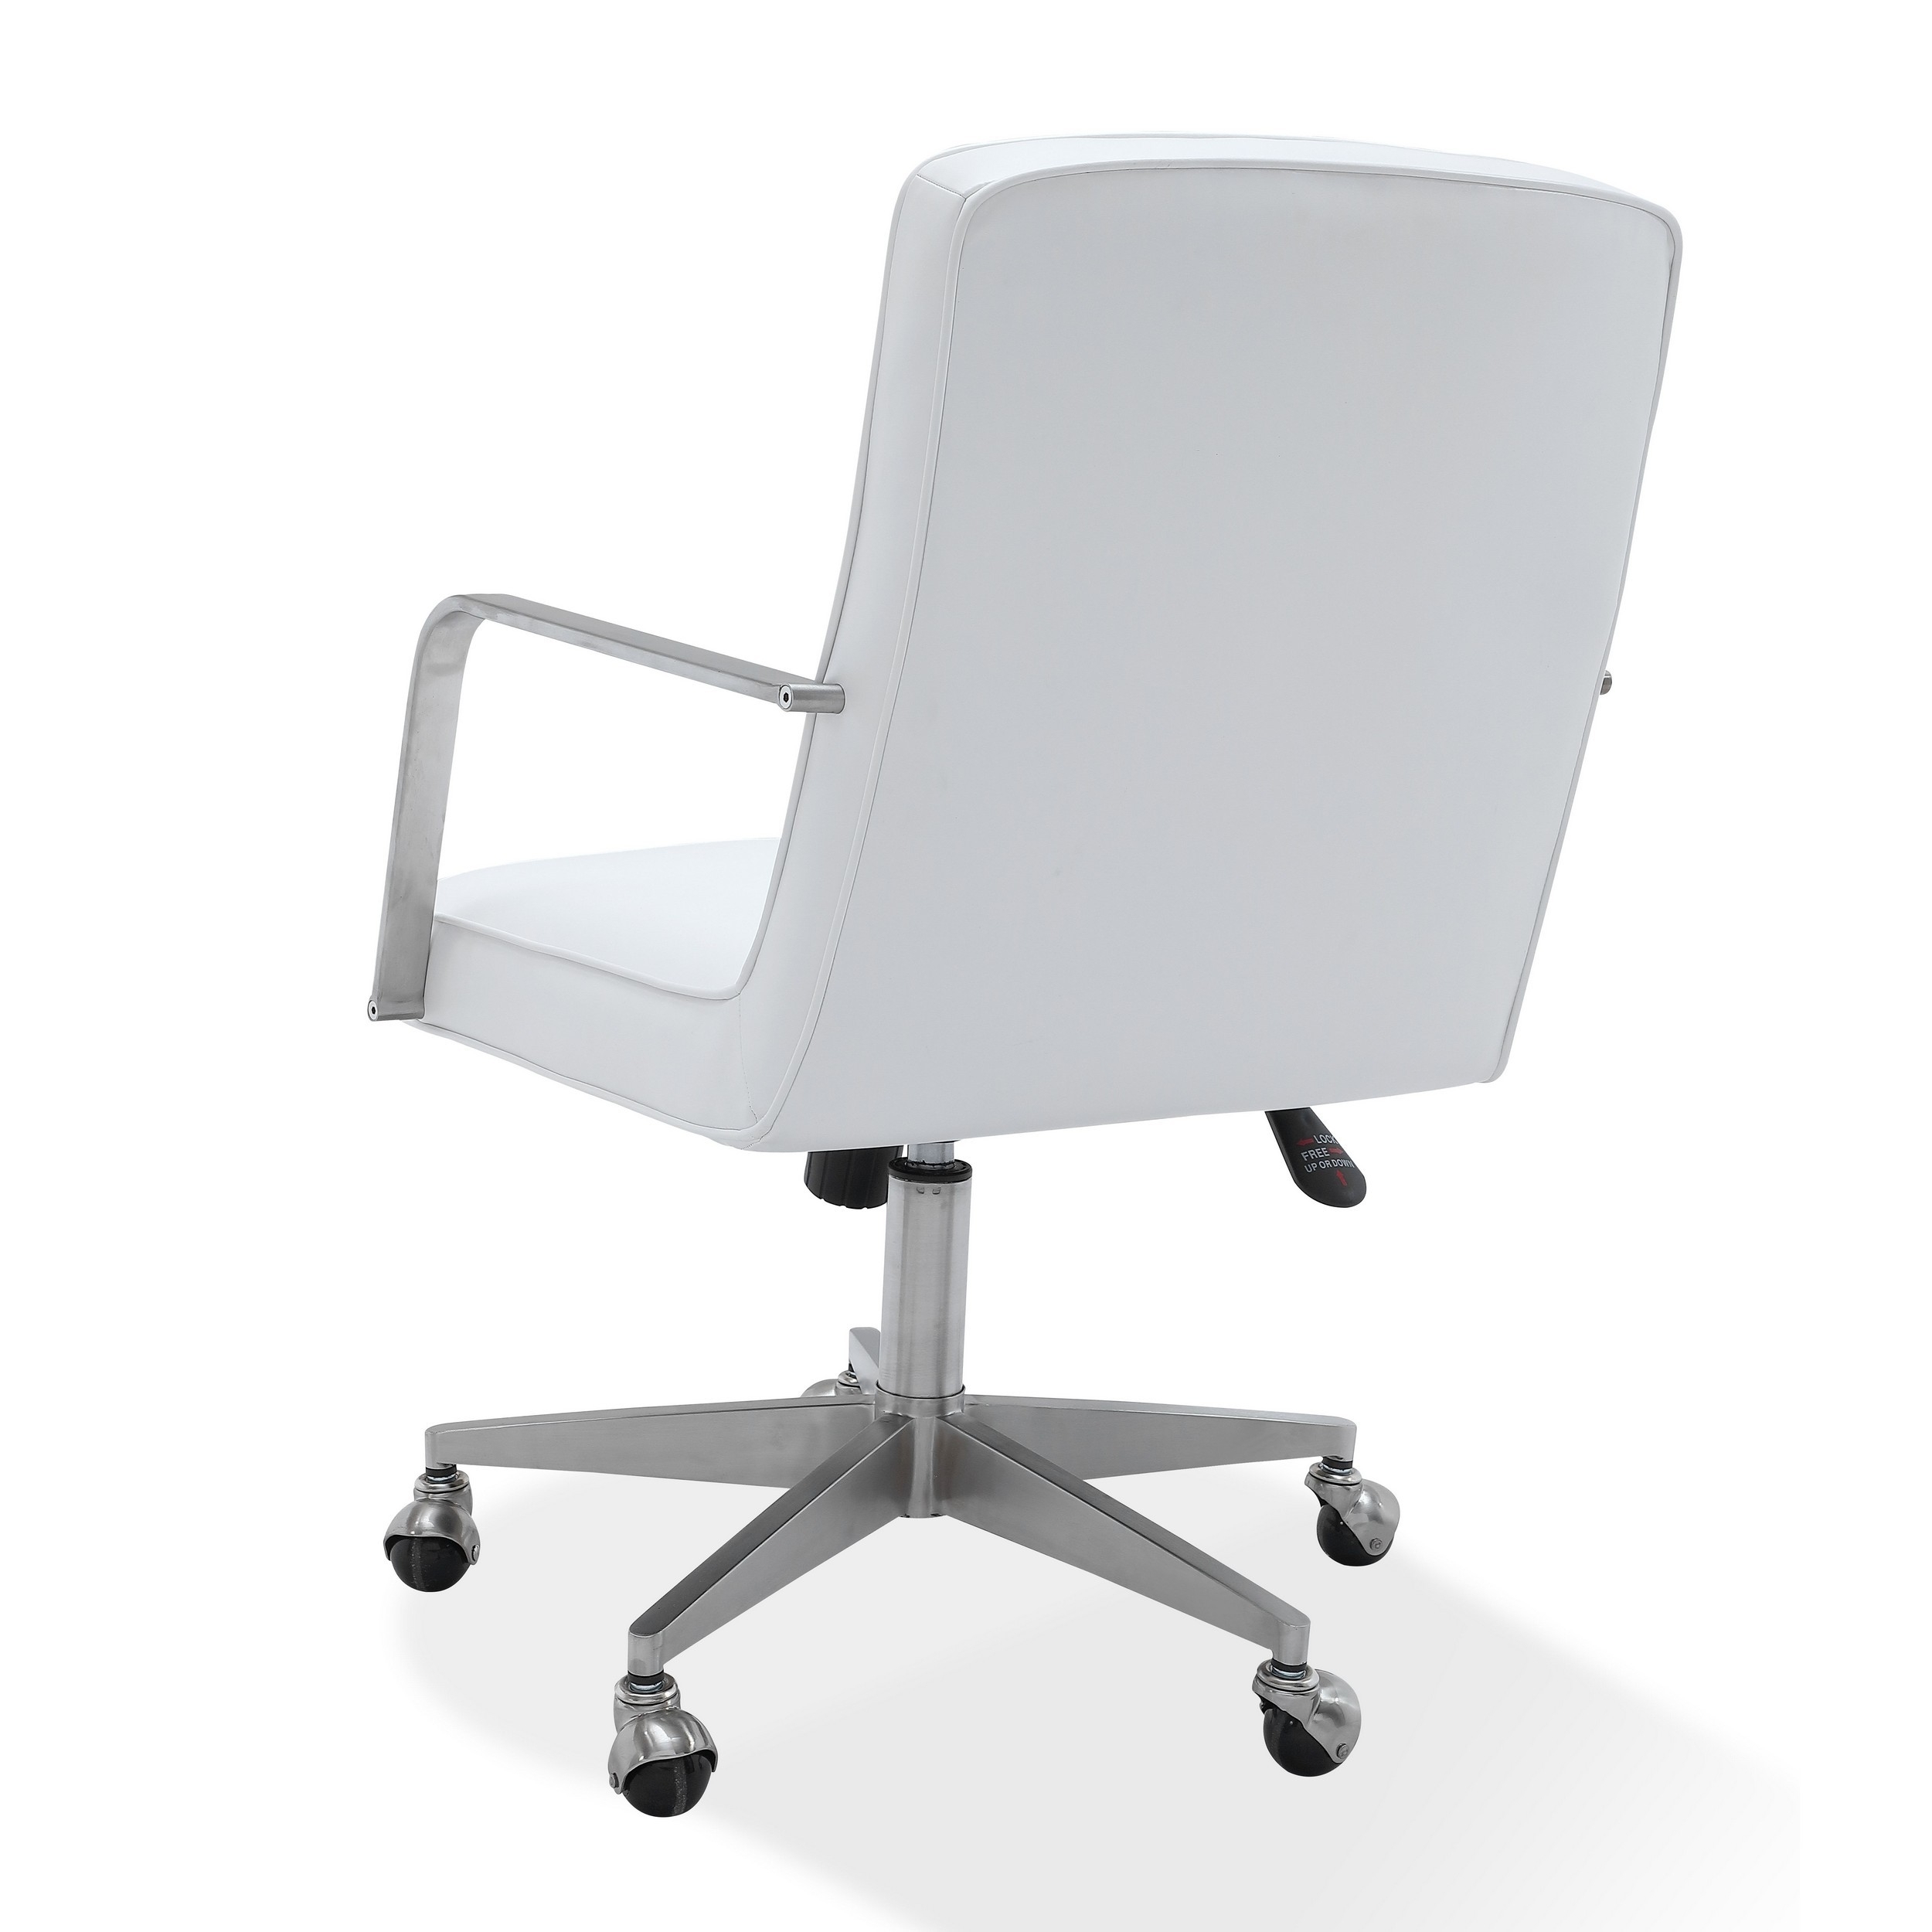 Rux 26 Inch Office Swivel Chair, White Faux Leather, Rolling Steel Base -Saltoro Sherpi